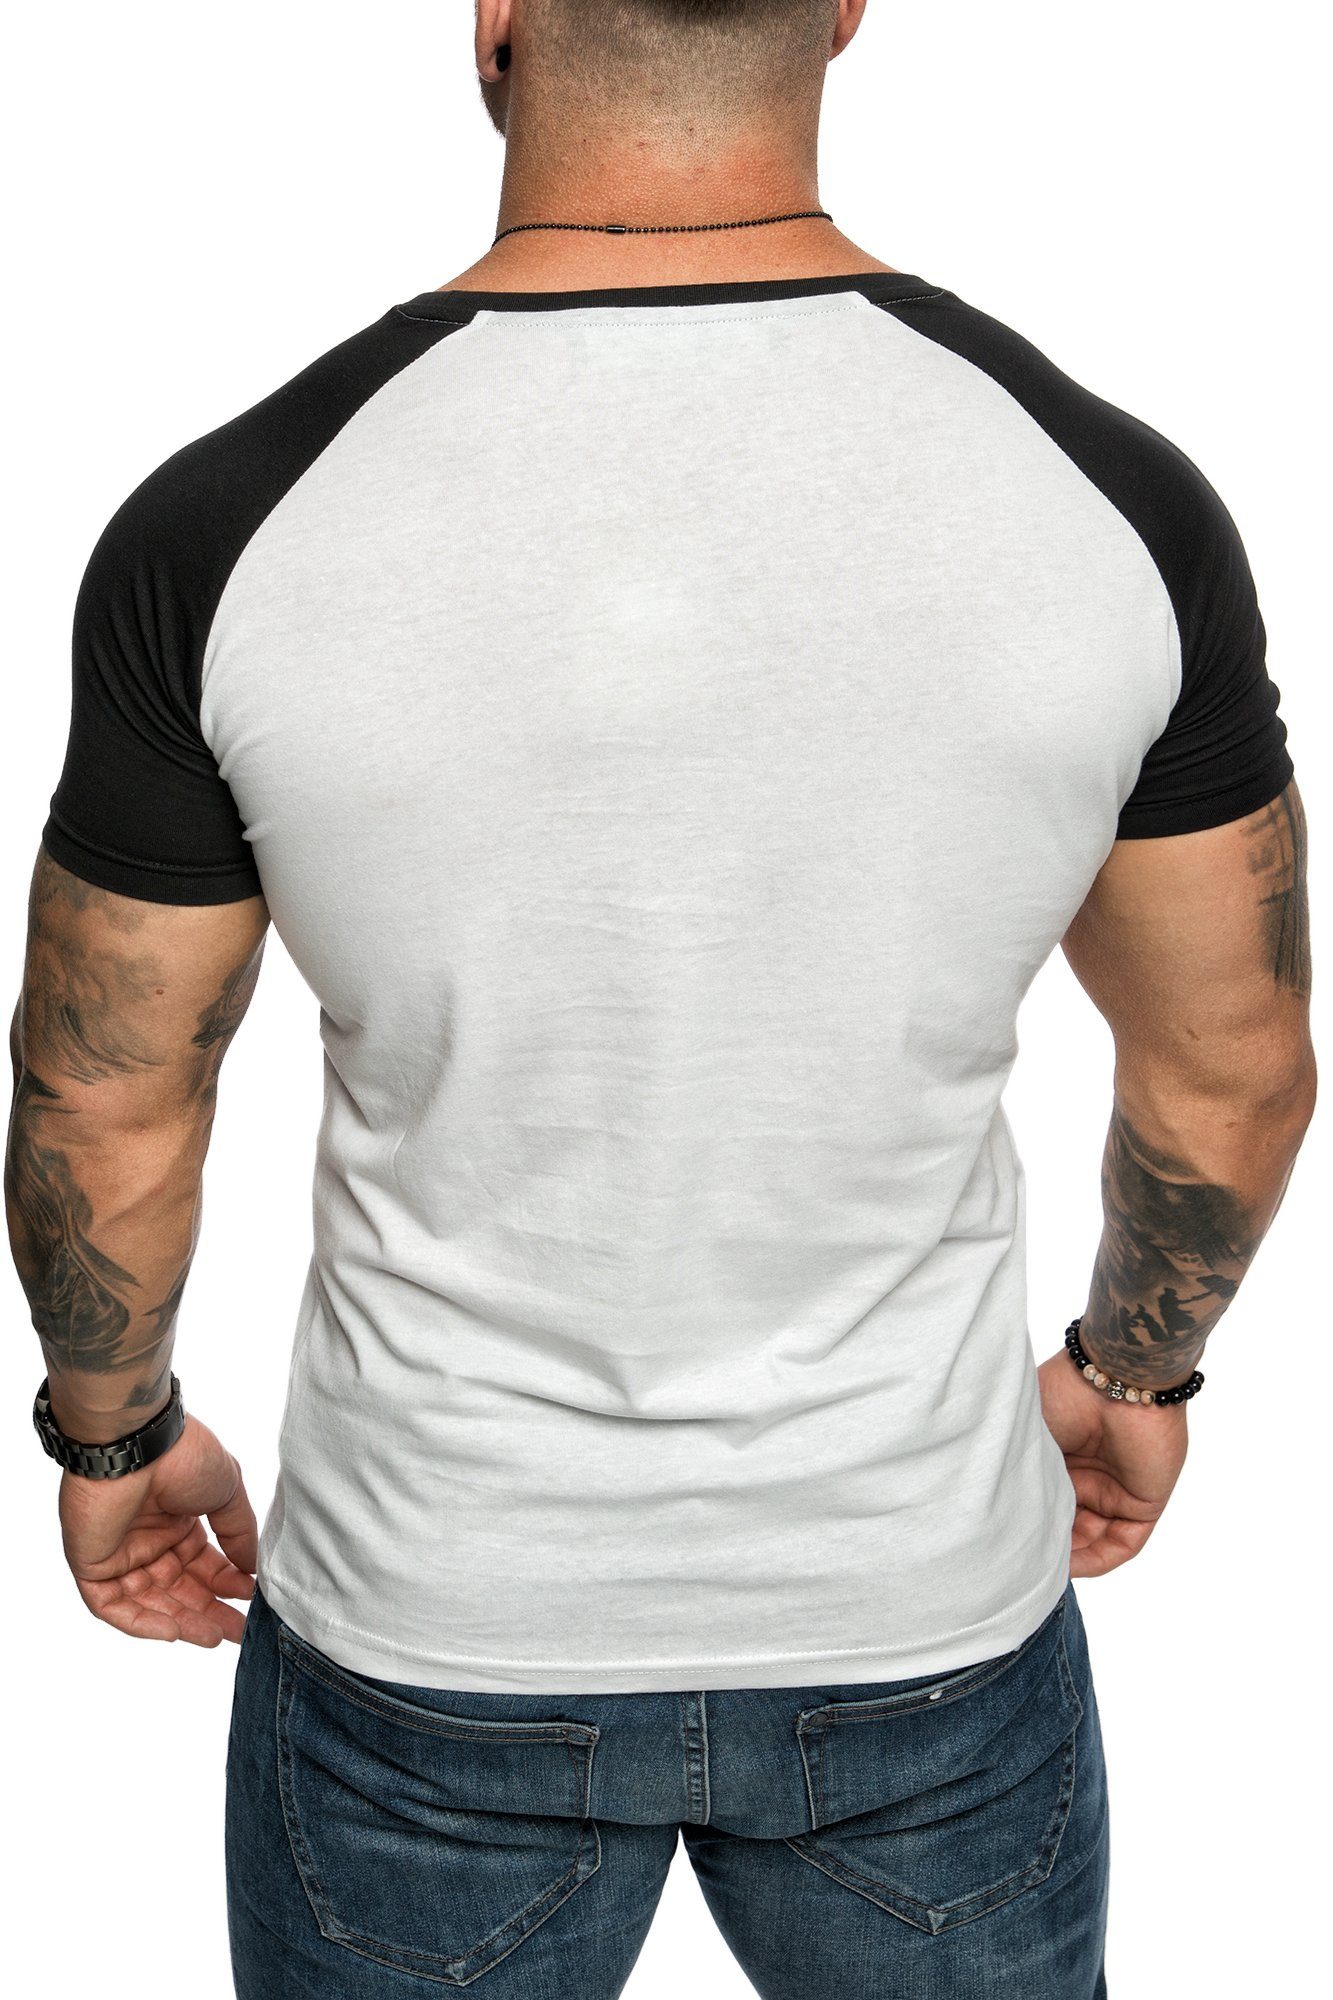 Herren SALEM Basic Rundhalsausschnitt Raglan Raglan Basic T-Shirt Weiß/Schwarz Shirt Rundhalsausschnitt mit mit T-Shirt Amaci&Sons